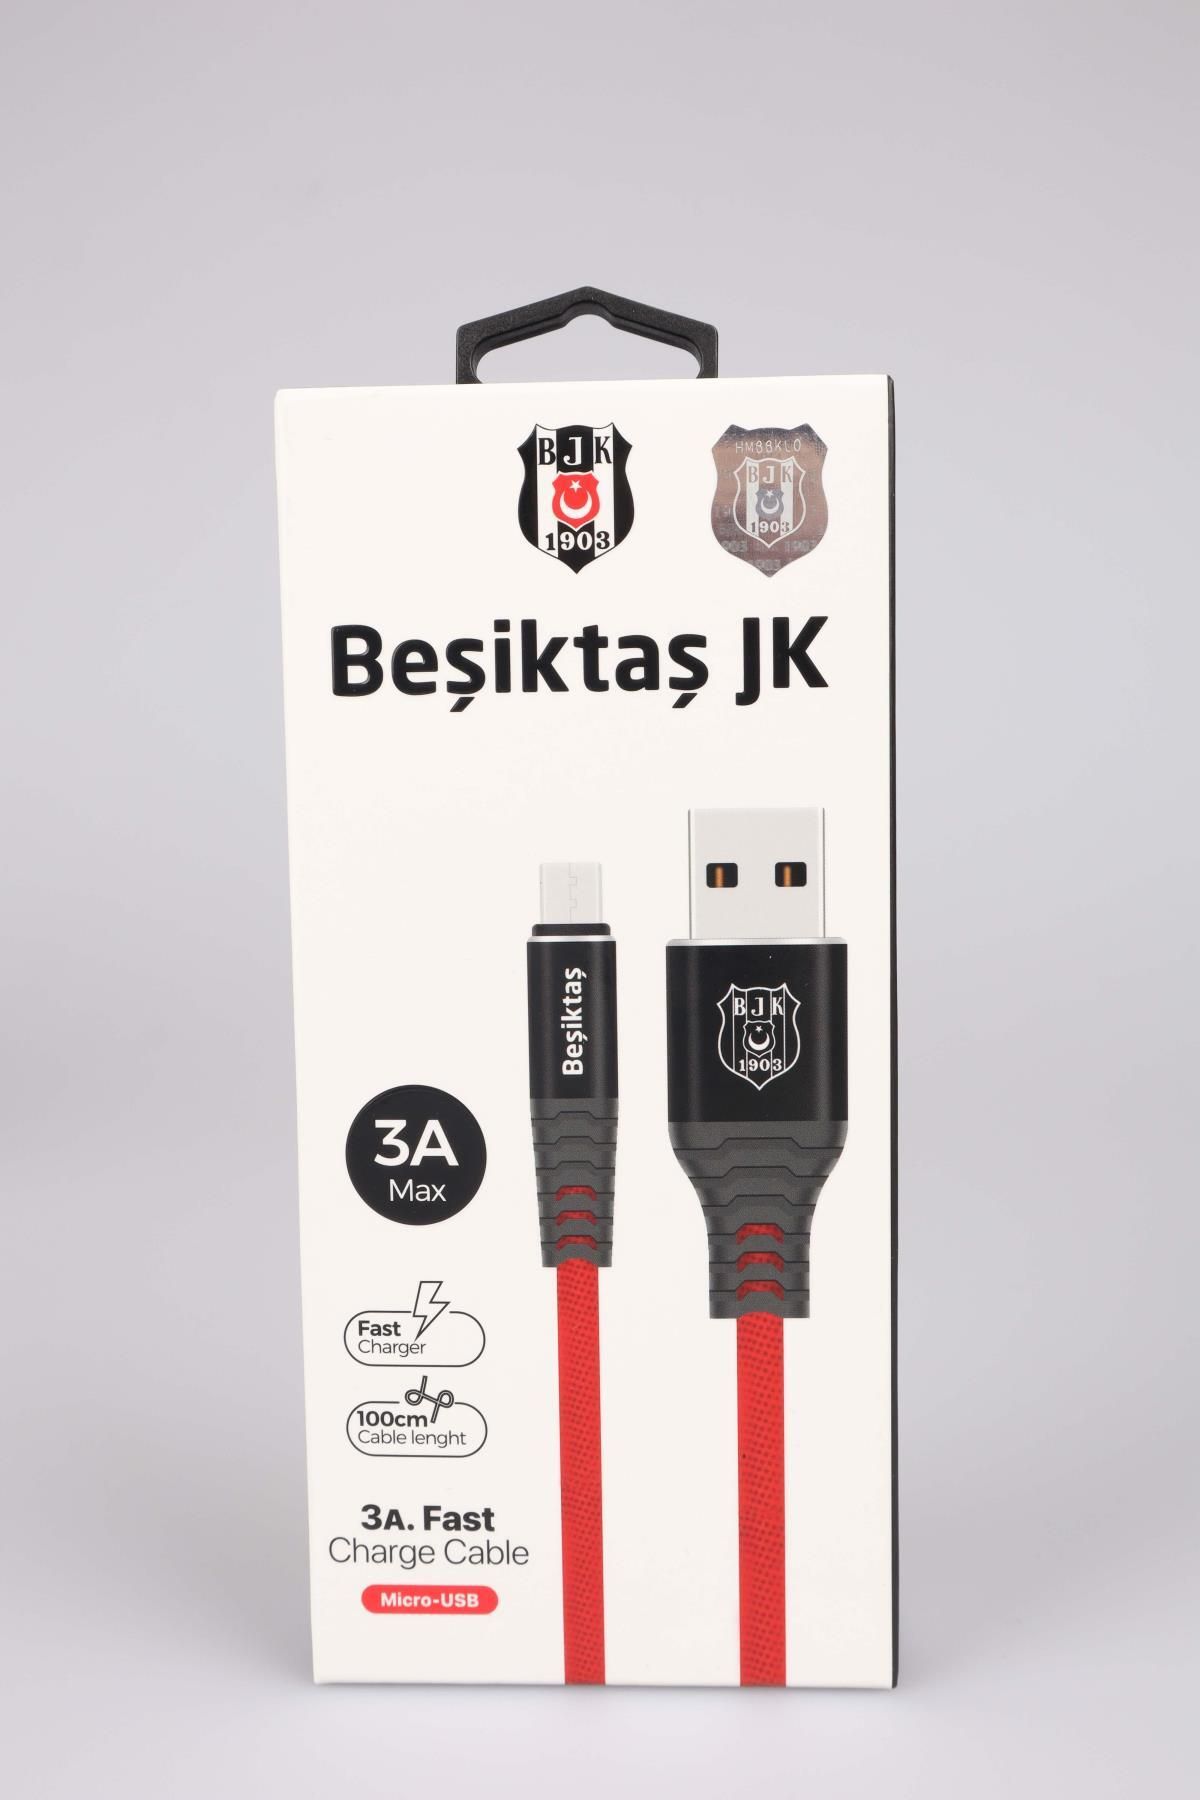 Beşiktaş Lisanslı Samsung Data Sarj Kablosu Kbl-1903 3a Micro Usb 1m (5X8)*40